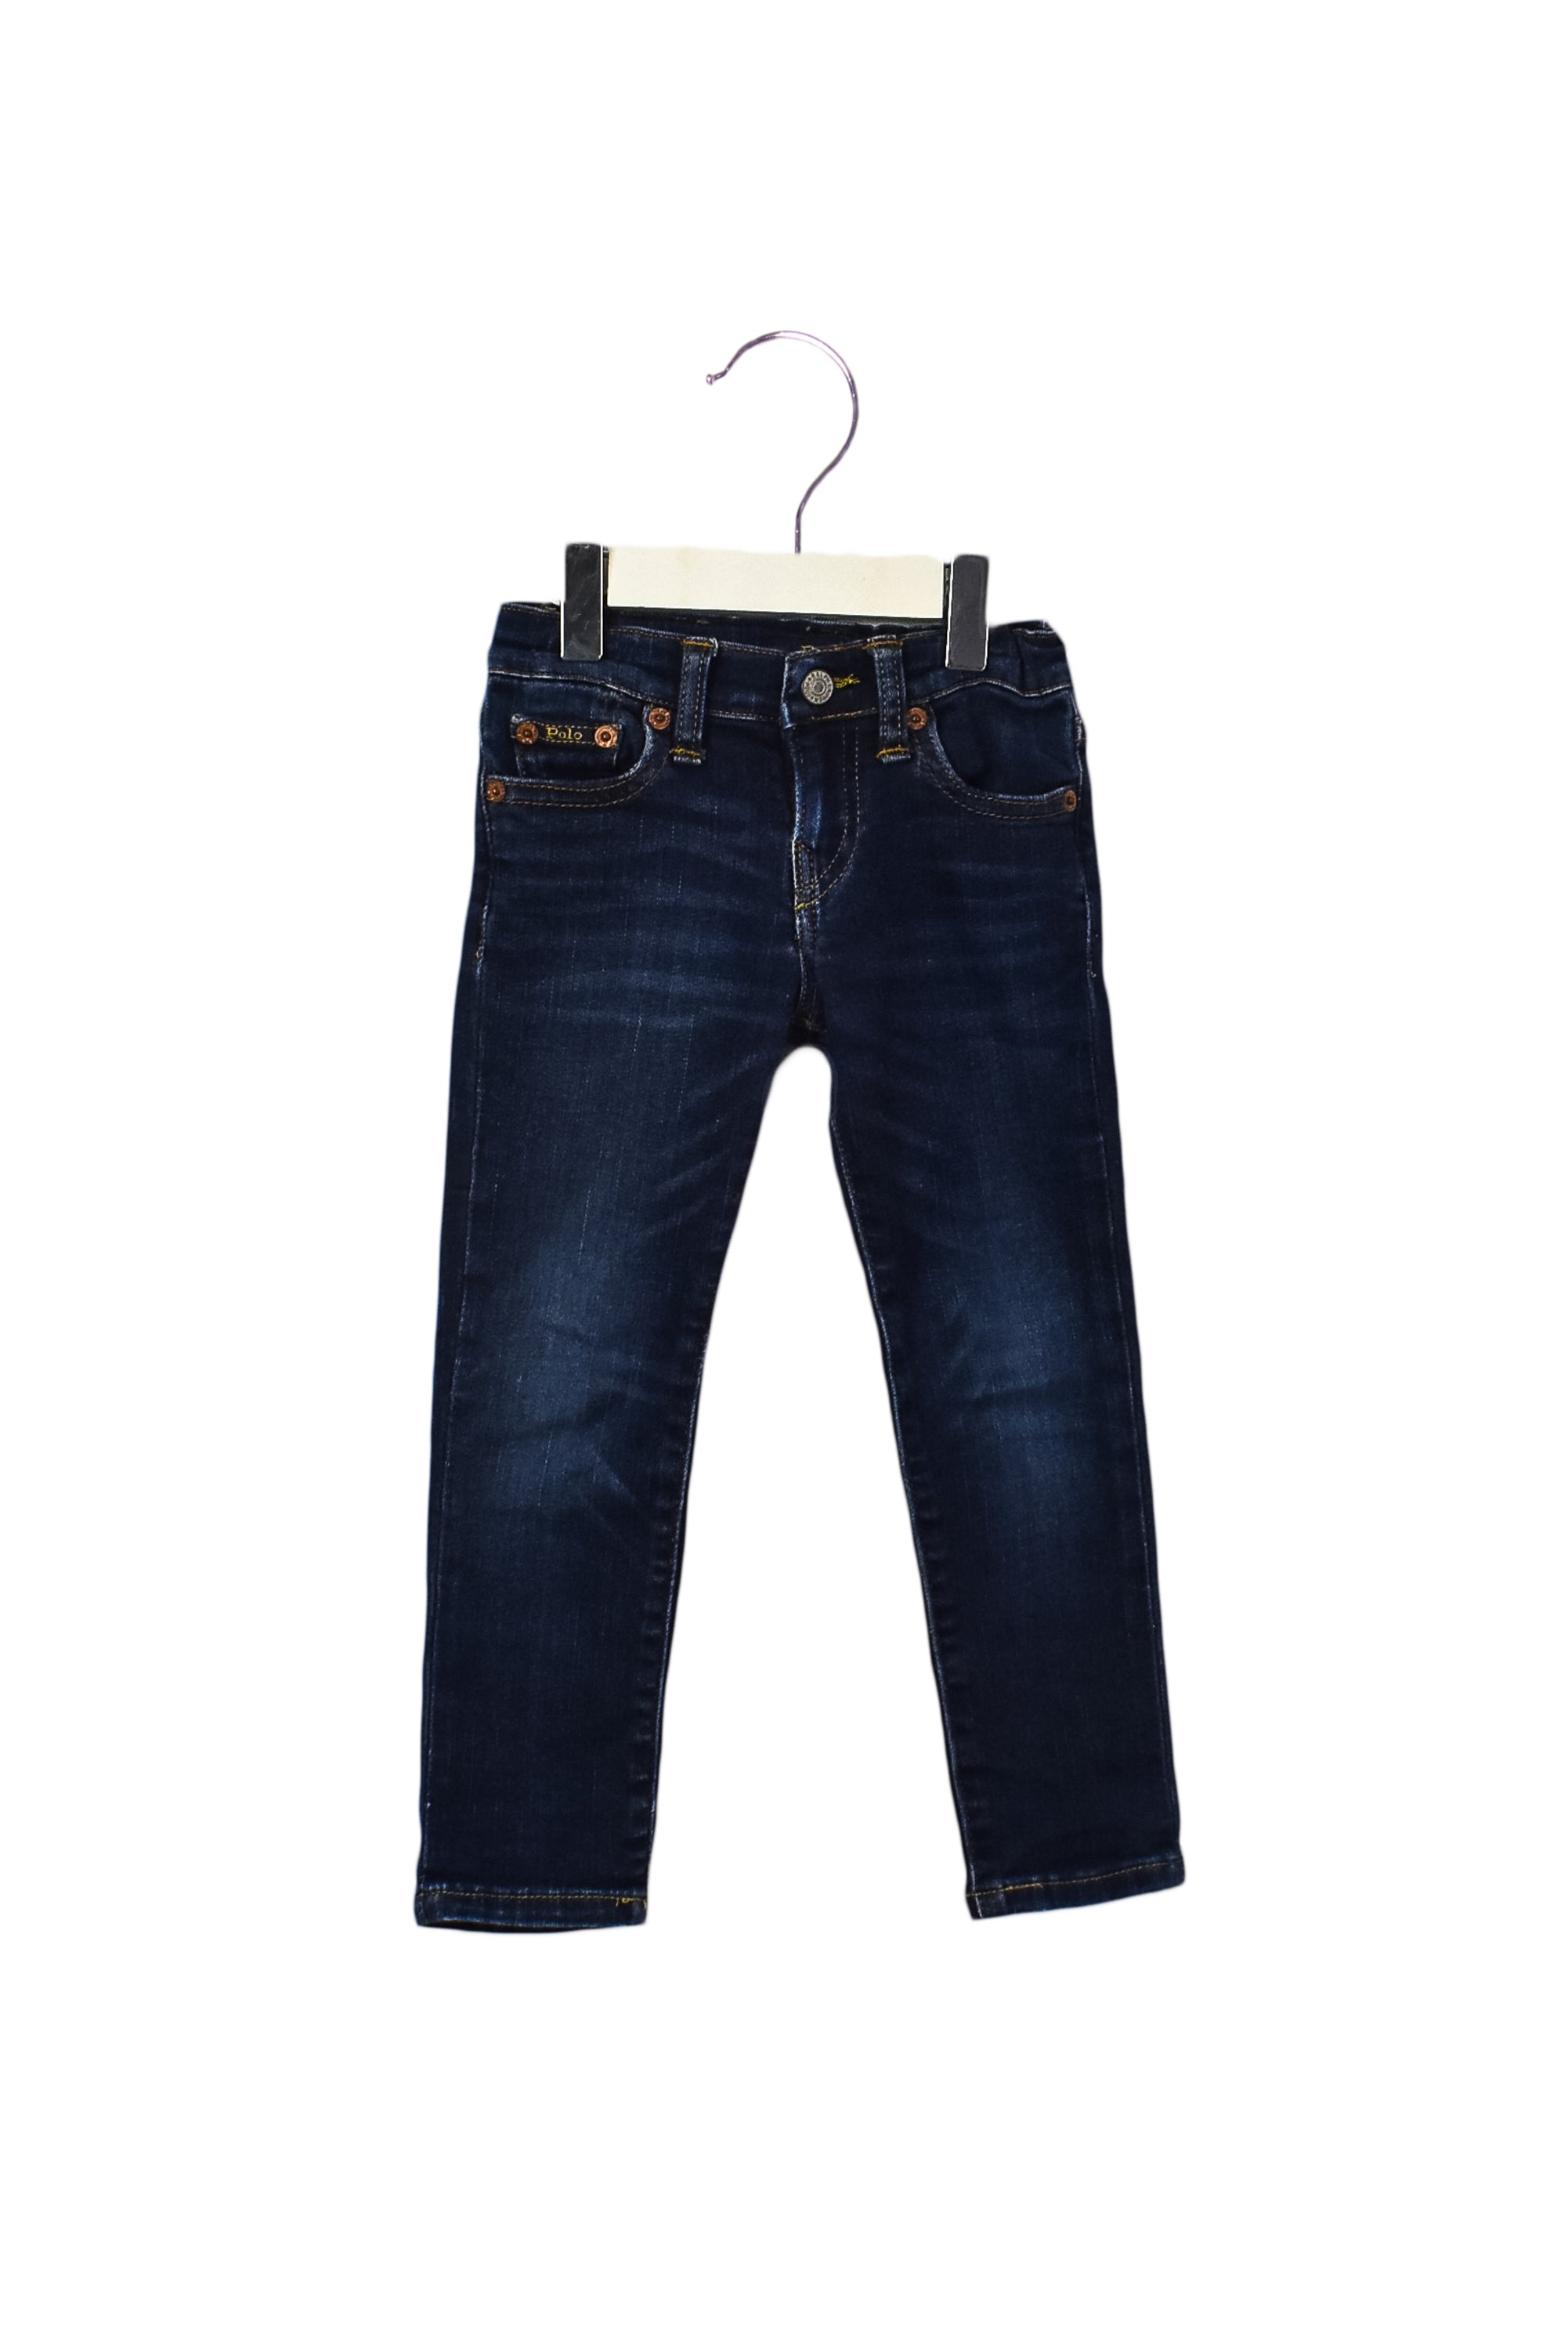 Jeans 3T – Retykle